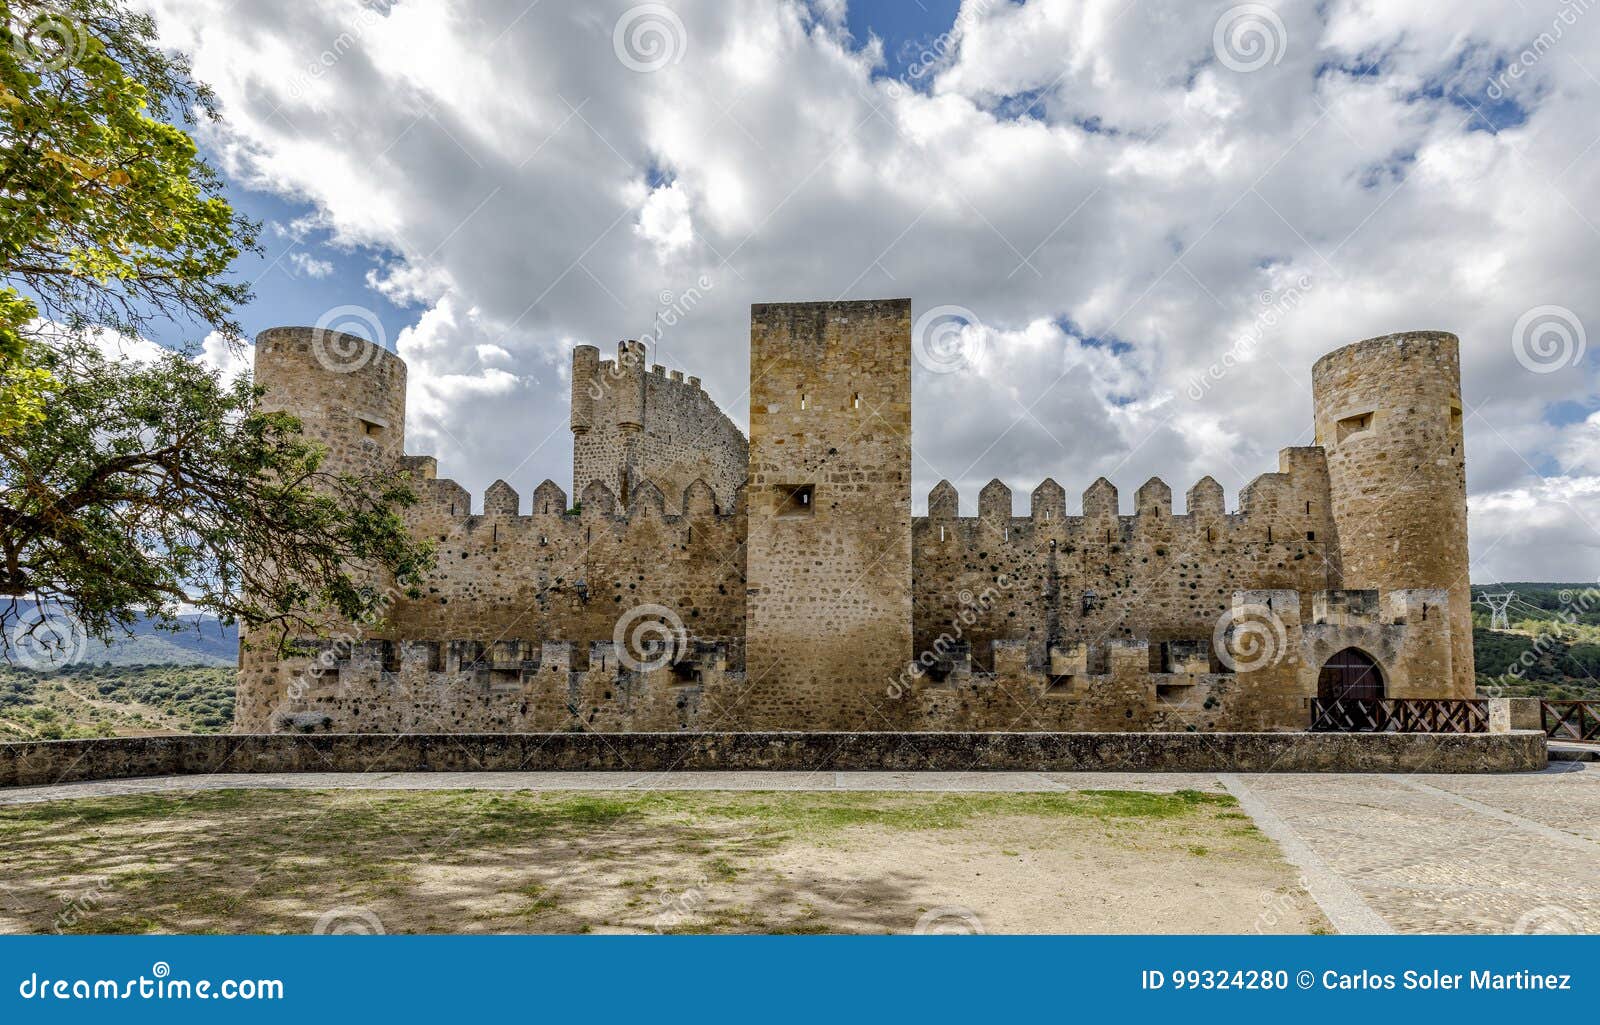 castle of the city of frias burgos, spain